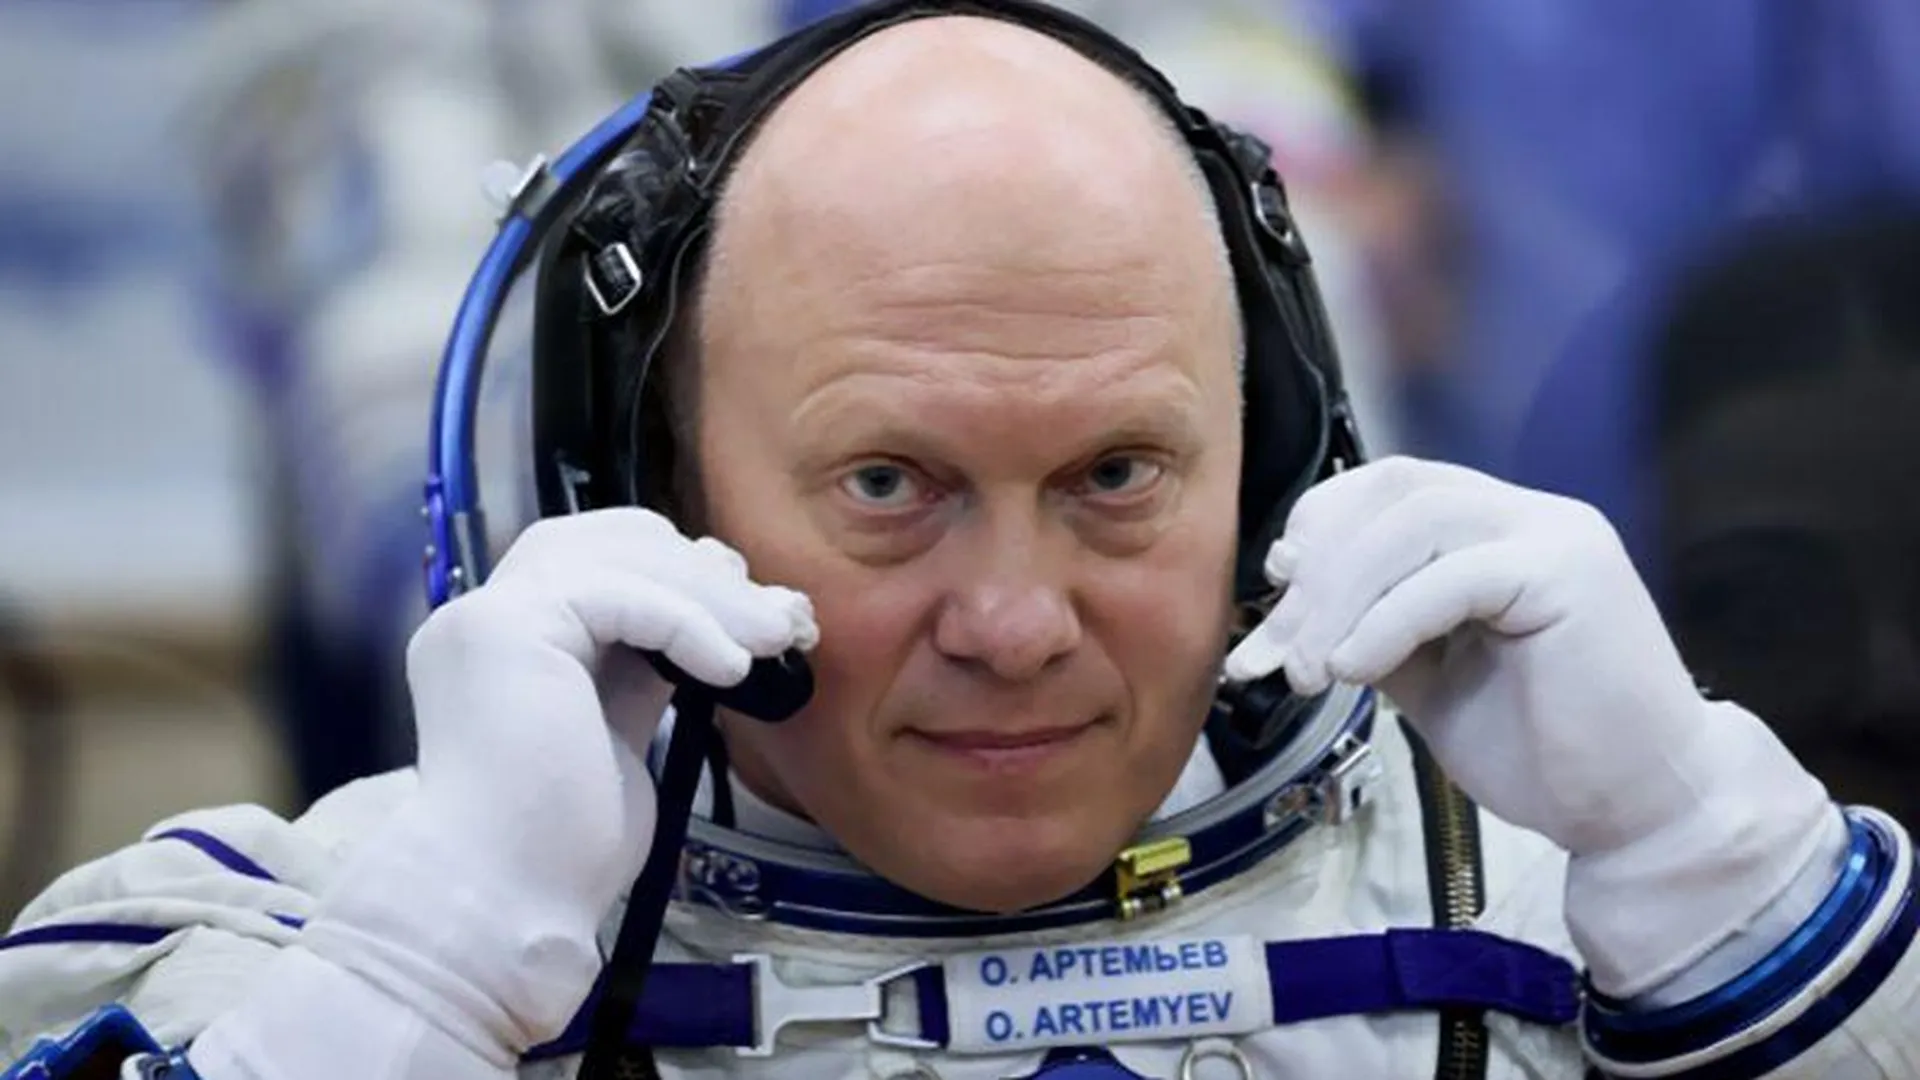 ЦПК отказался комментировать ДТП с космонавтом Олегом Артемьевым